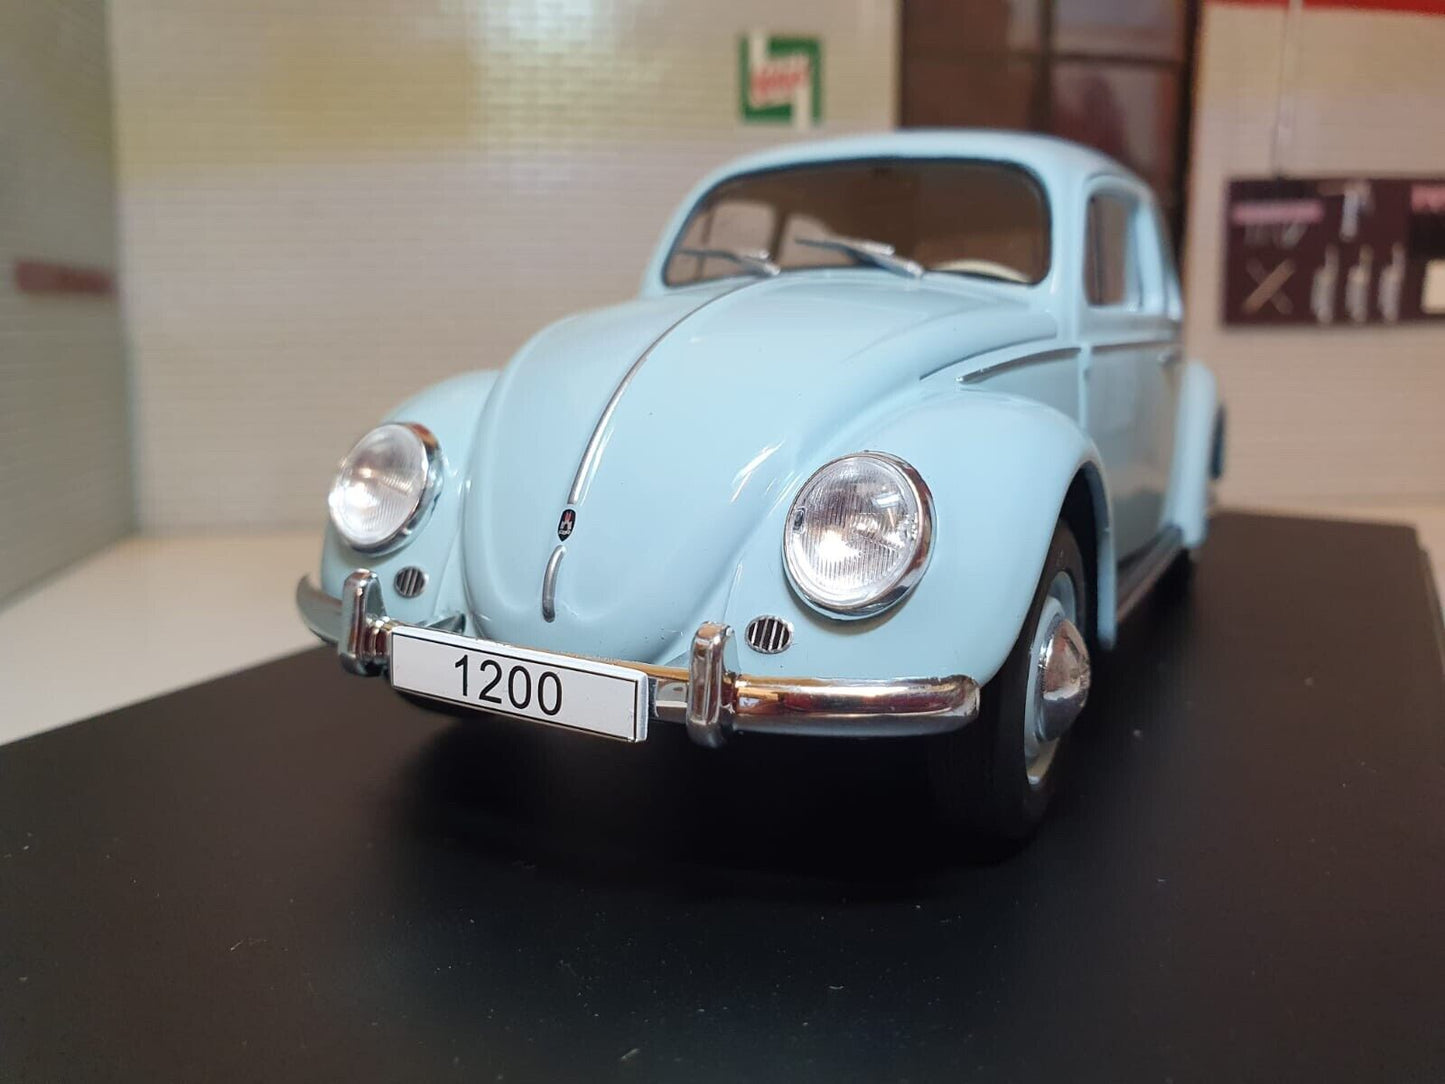 Volkswagen 1960 Käfer 124055 Whitebox 1:24